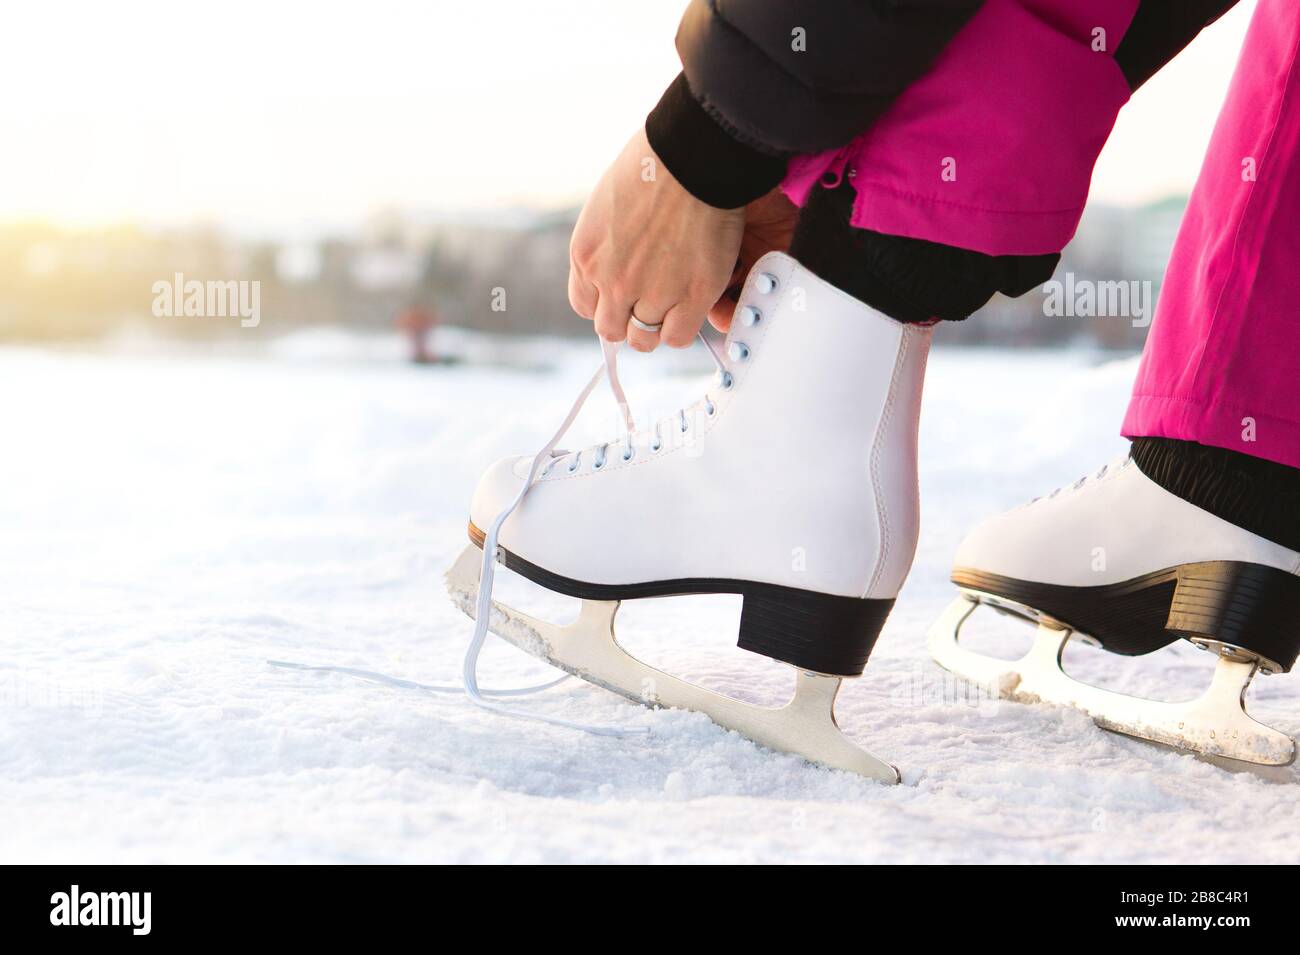 Donna che lega i pattini del ghiaccio merletti da un lago o da uno stagno. Legatura di iceskates. Pattinatore in procinto di allenarsi su una pista o pista da pattinaggio all'aperto. Sole inverno tempo. Foto Stock